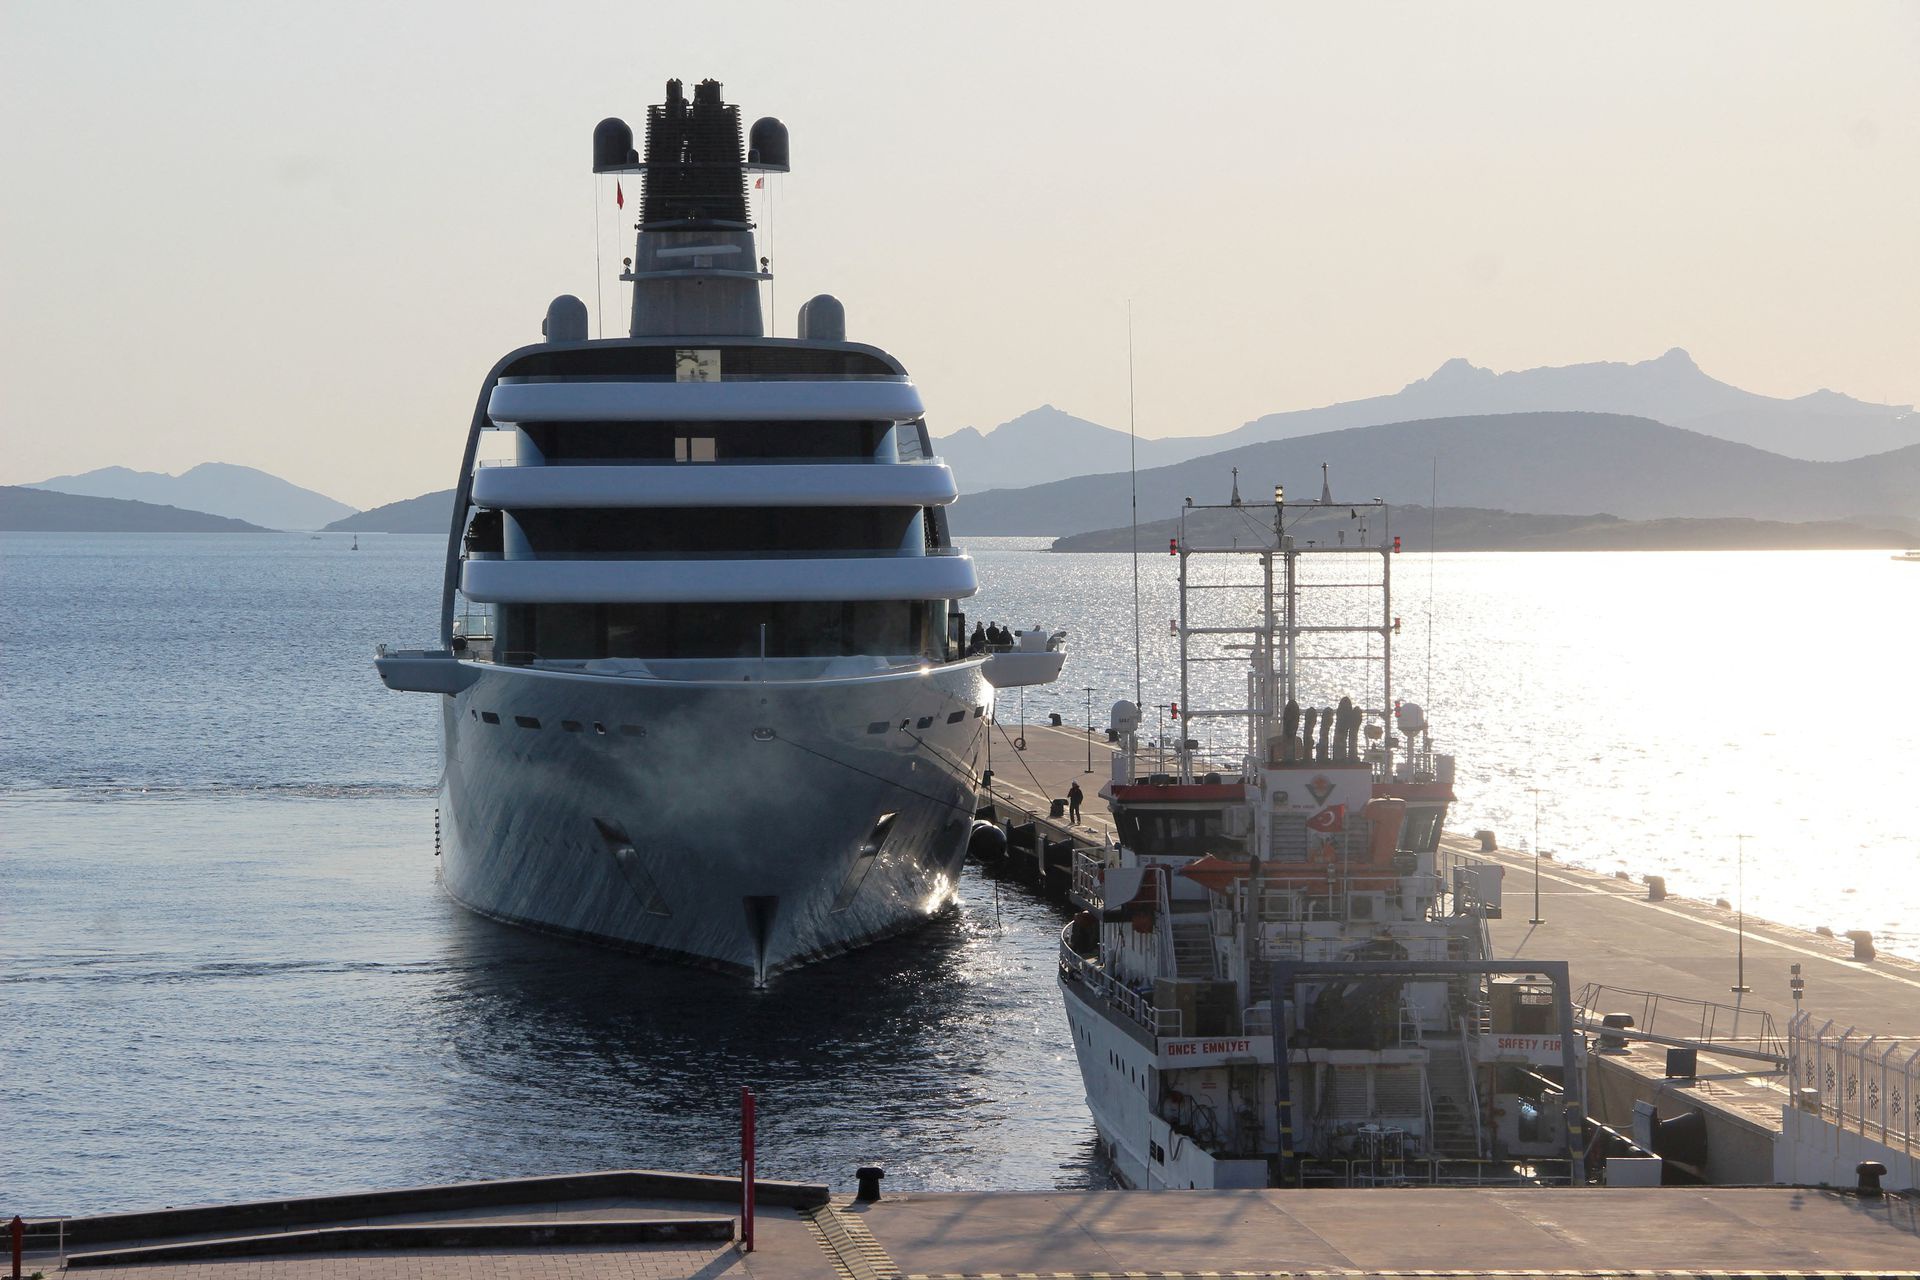 Siêu du thuyền Solaris của tỷ phú Roman Abramovich cập bến ở Bodrum, phía tây nam Thổ Nhĩ Kỳ vào ngày 21/3. Ảnh: IHA.